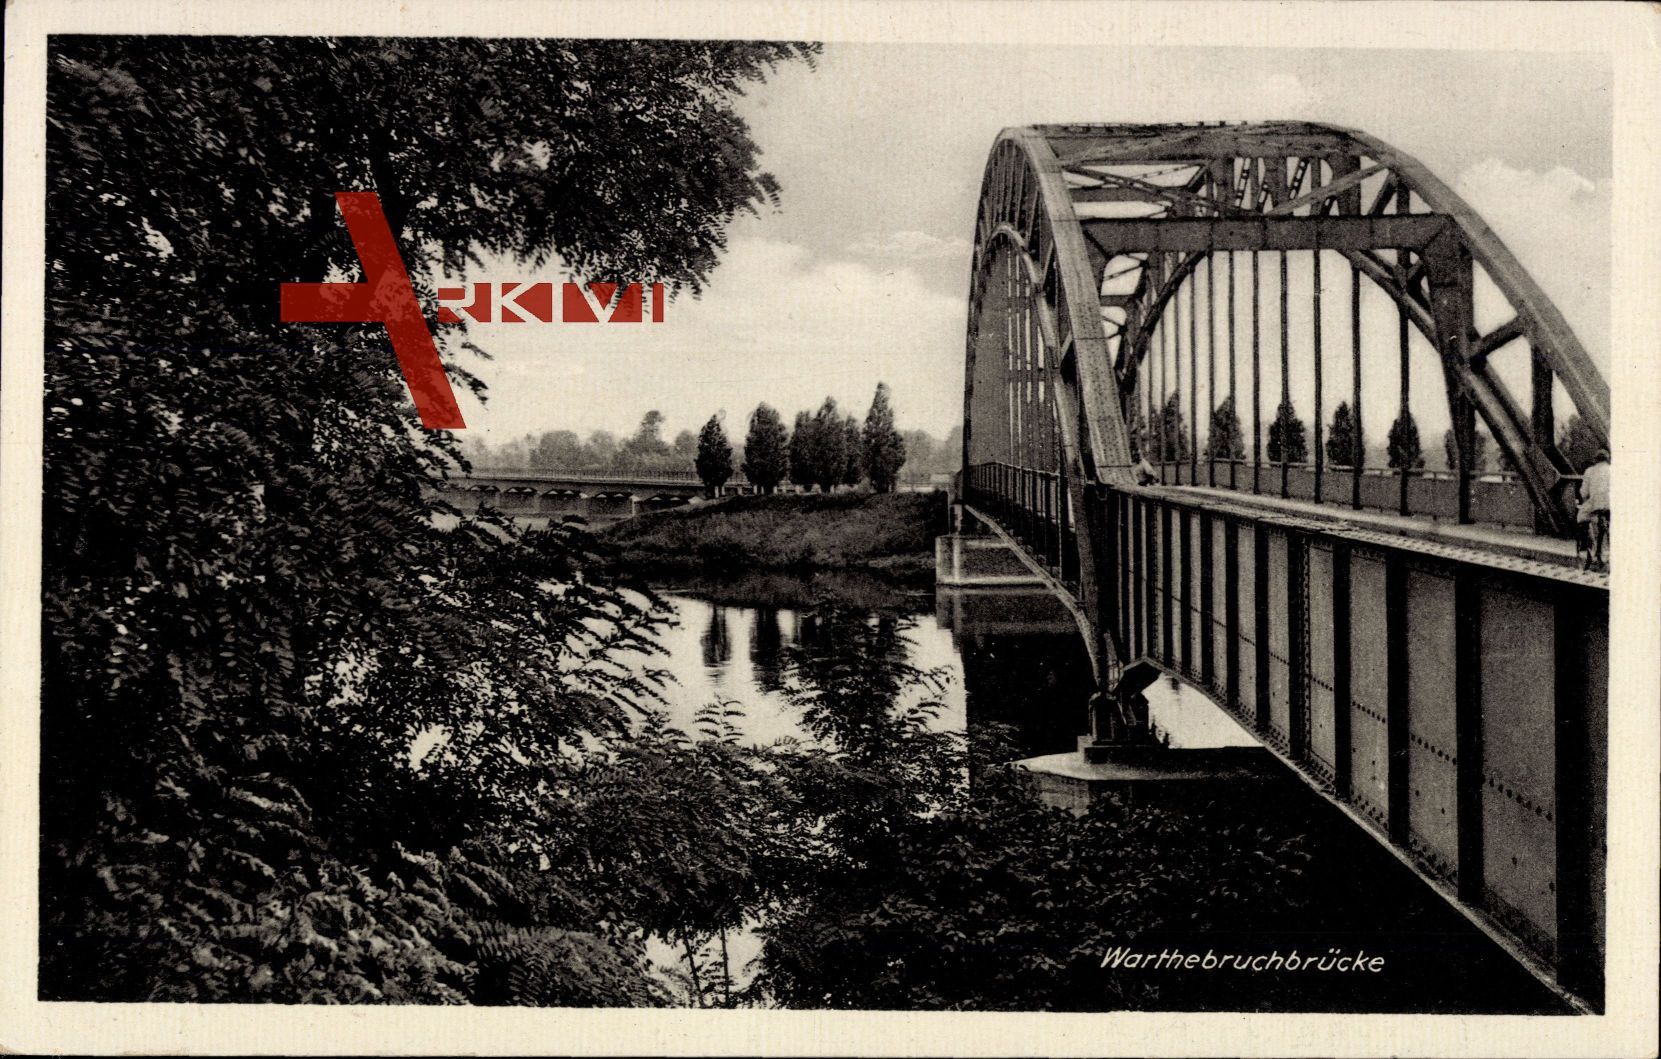 Gorzów Wielkopolski Landsberg Warthe Ostbrandenburg, Warthebruchbrücke